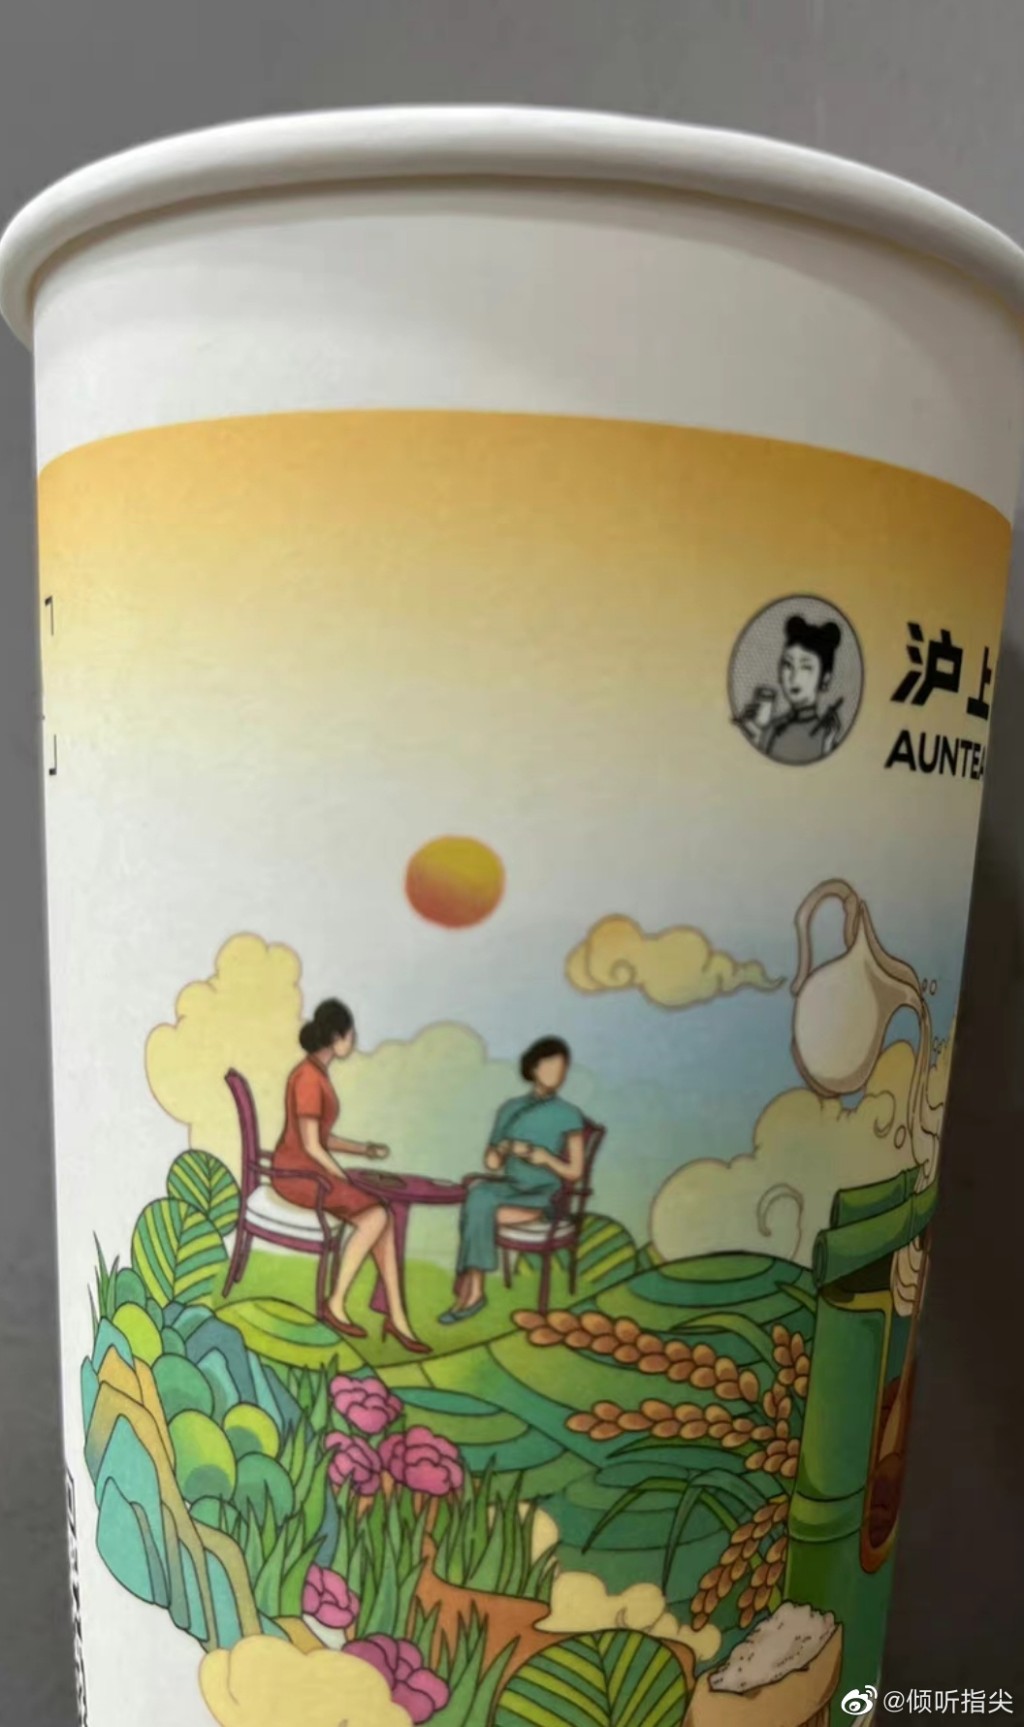 「滬上阿姨」的茶飲杯印有「女子穿高叉旗袍」的圖案近日引起網民關注。微博圖